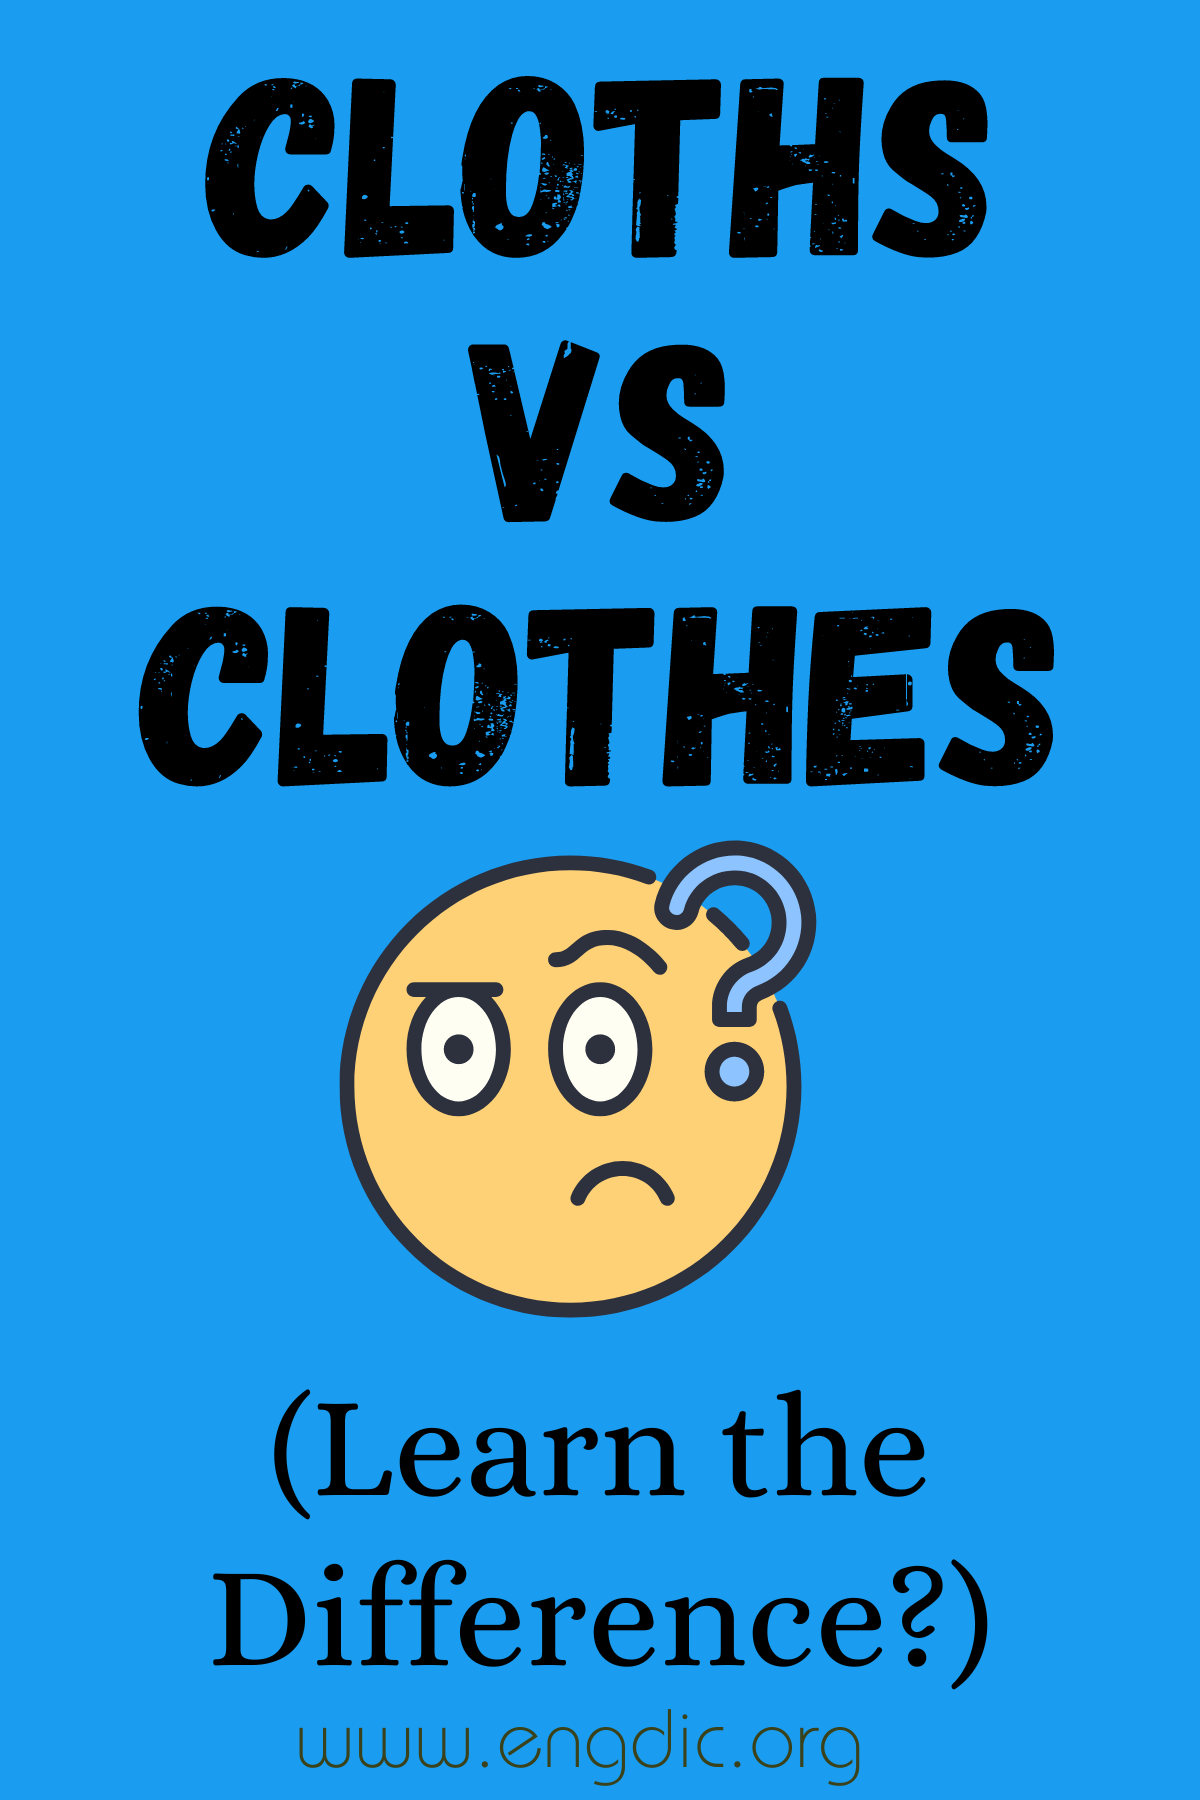 Cloths vs Clothes